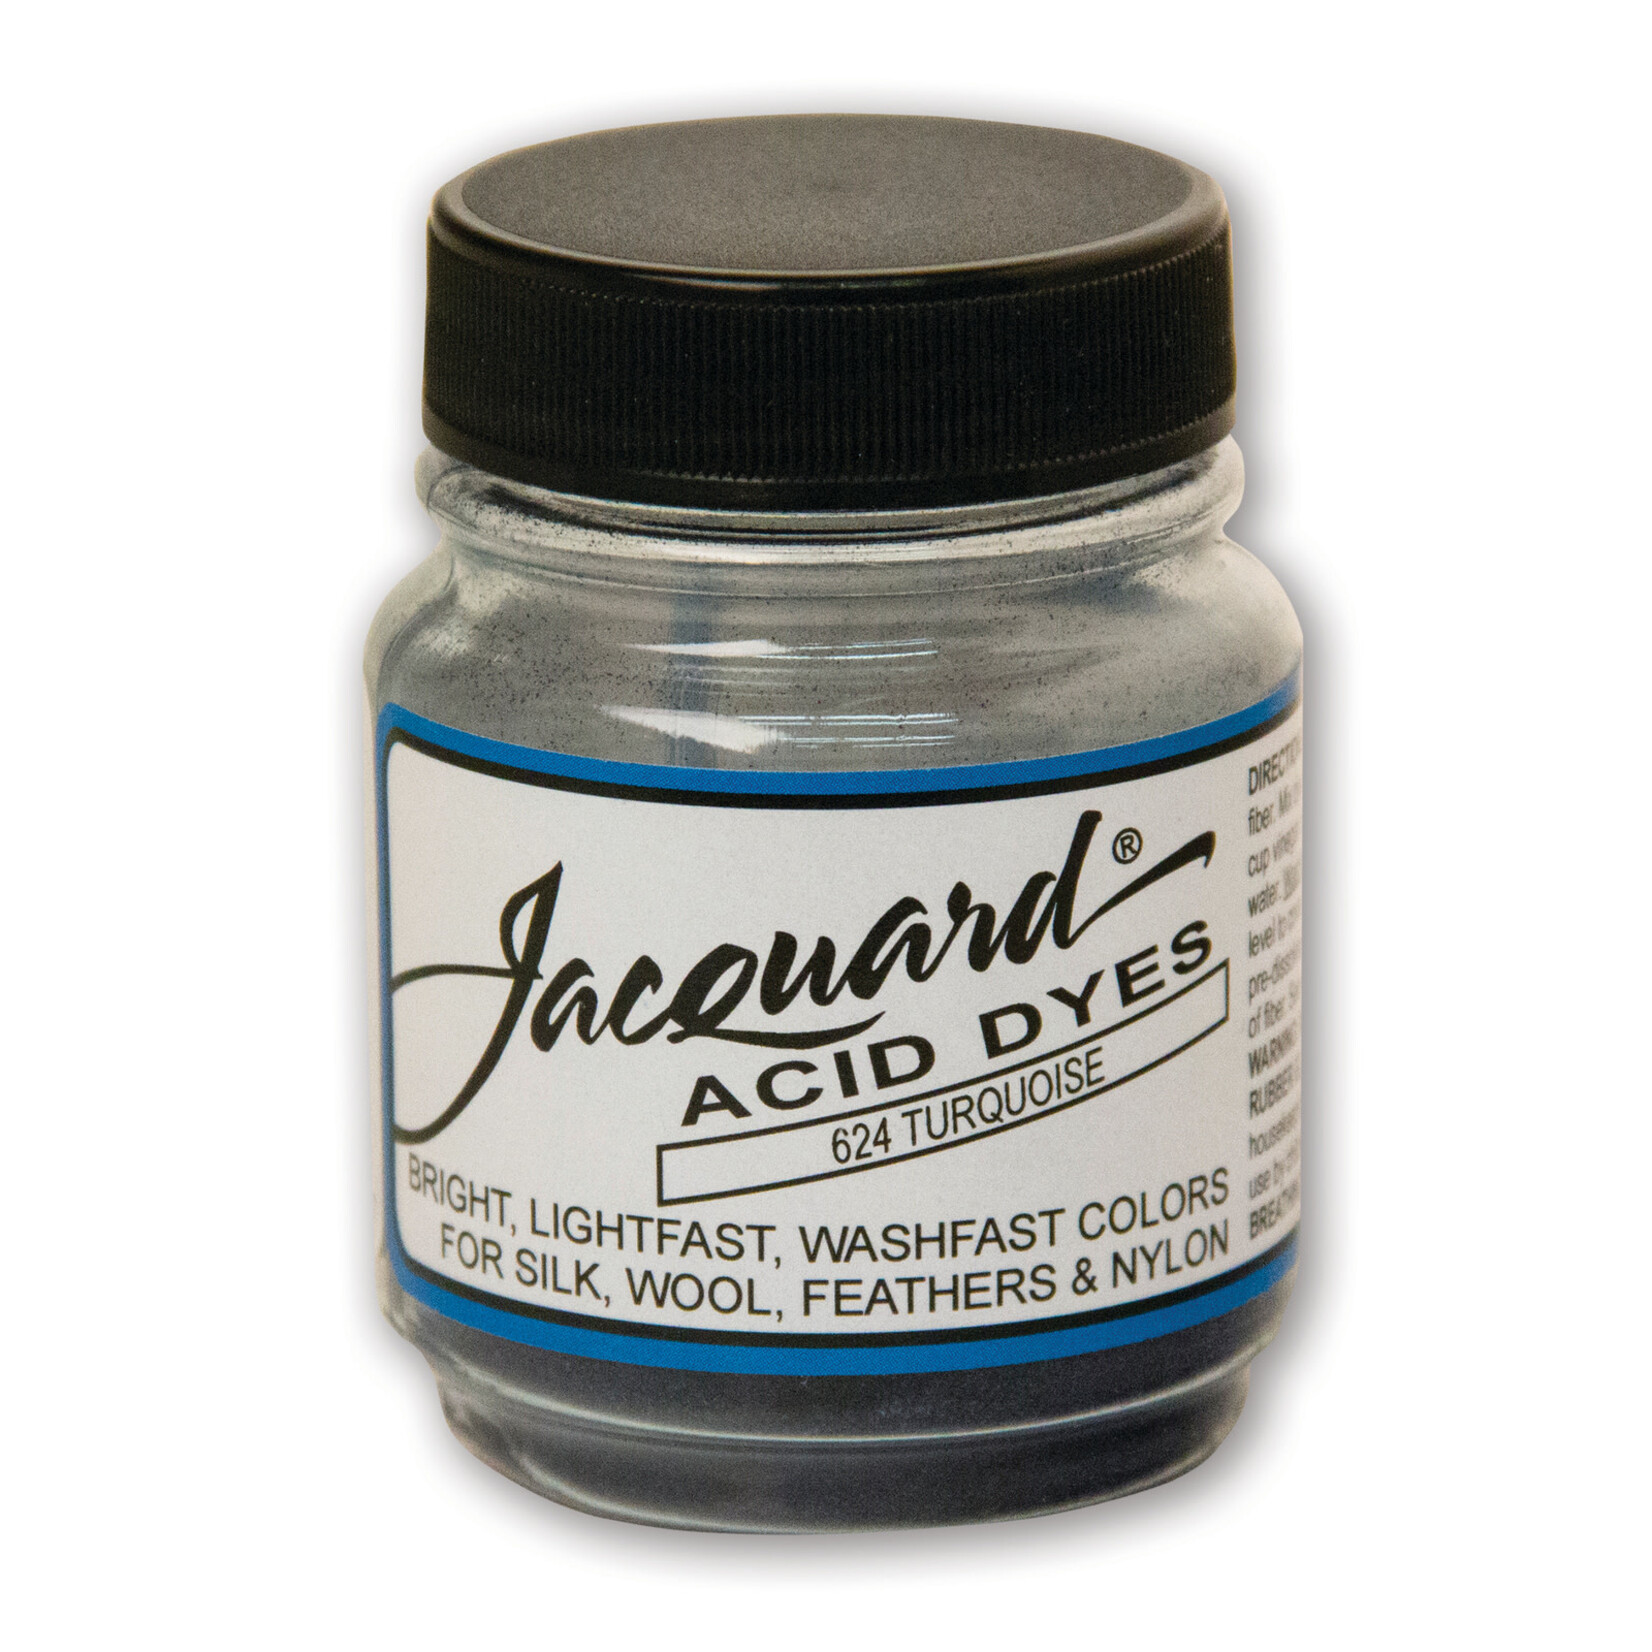 Jacquard Acid Dye.5 Oz Turquoise